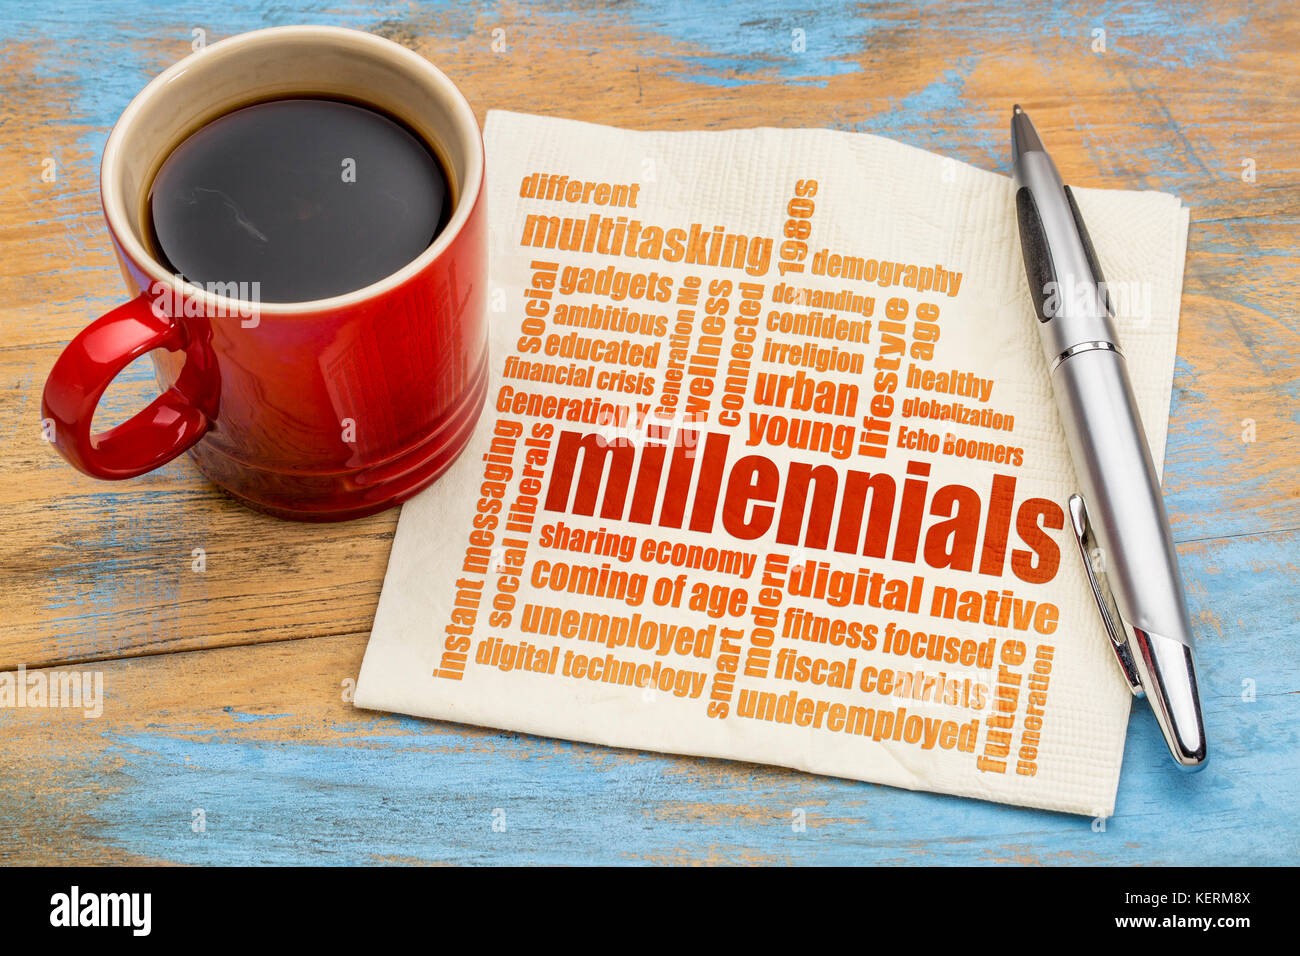 Millennials generation Wort Wolke auf einer Serviette eine Tasse Kaffee - Demografie Konzept Stockfoto